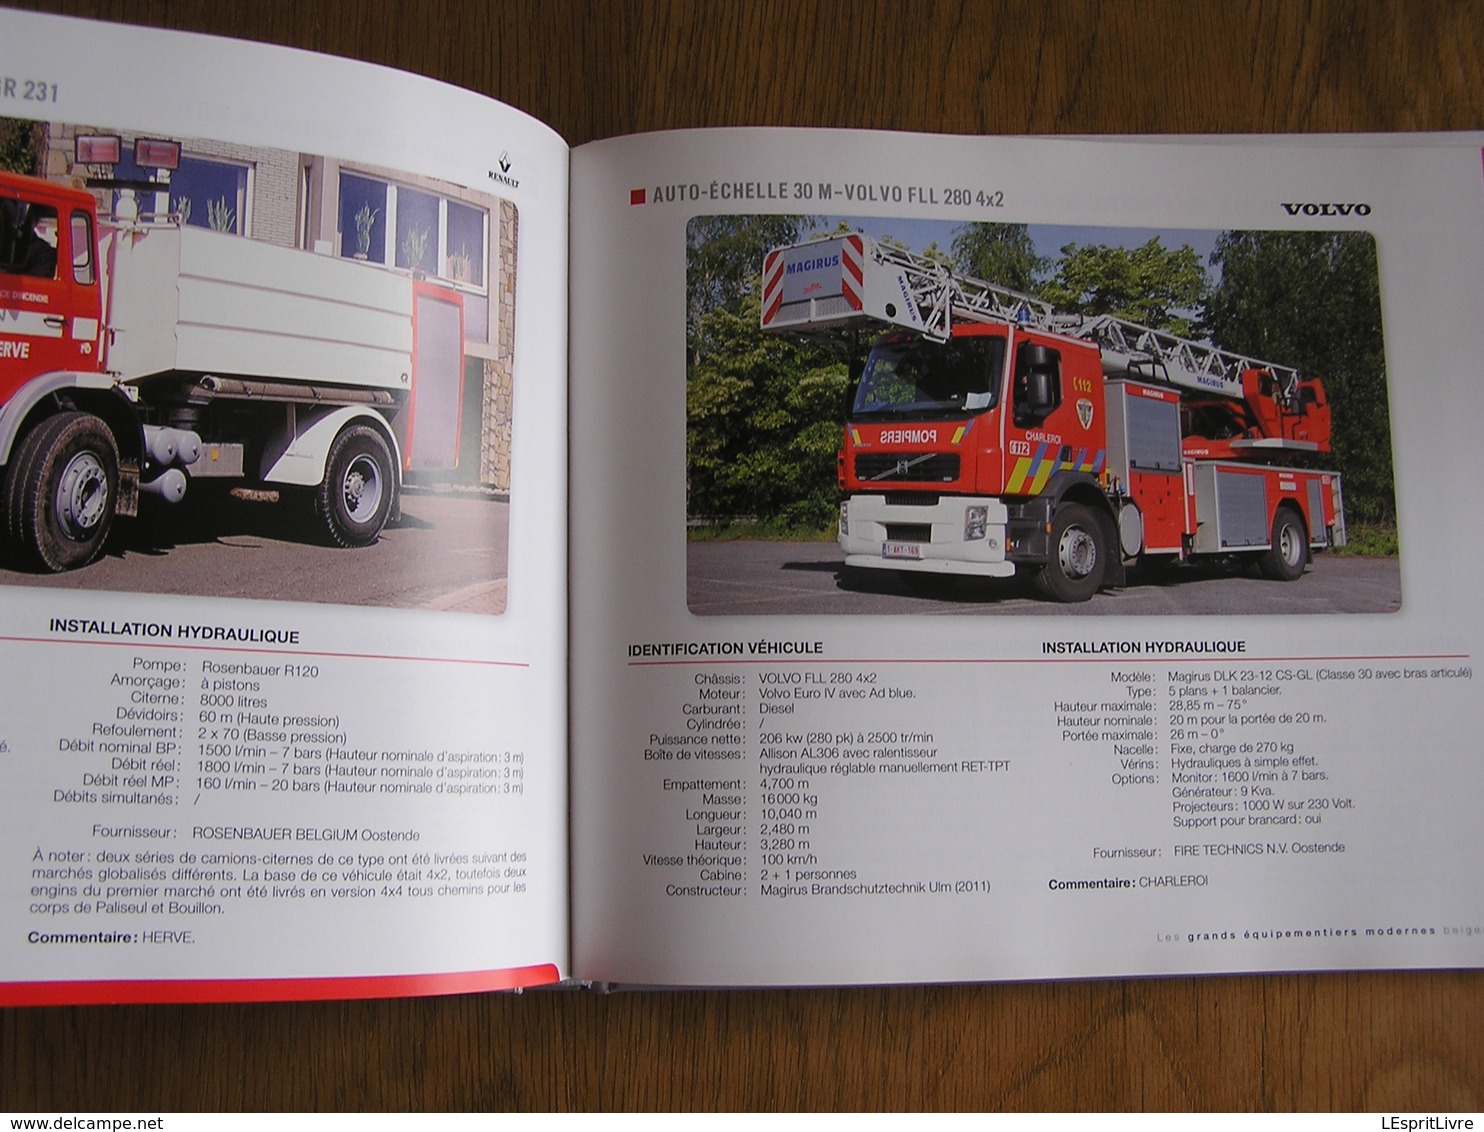 POMPIERS Camions et Véhicules 150 Ans d' Histoire S mores Editions Weyrich Belgique Sapeur Pompier Anti Feu Incendie